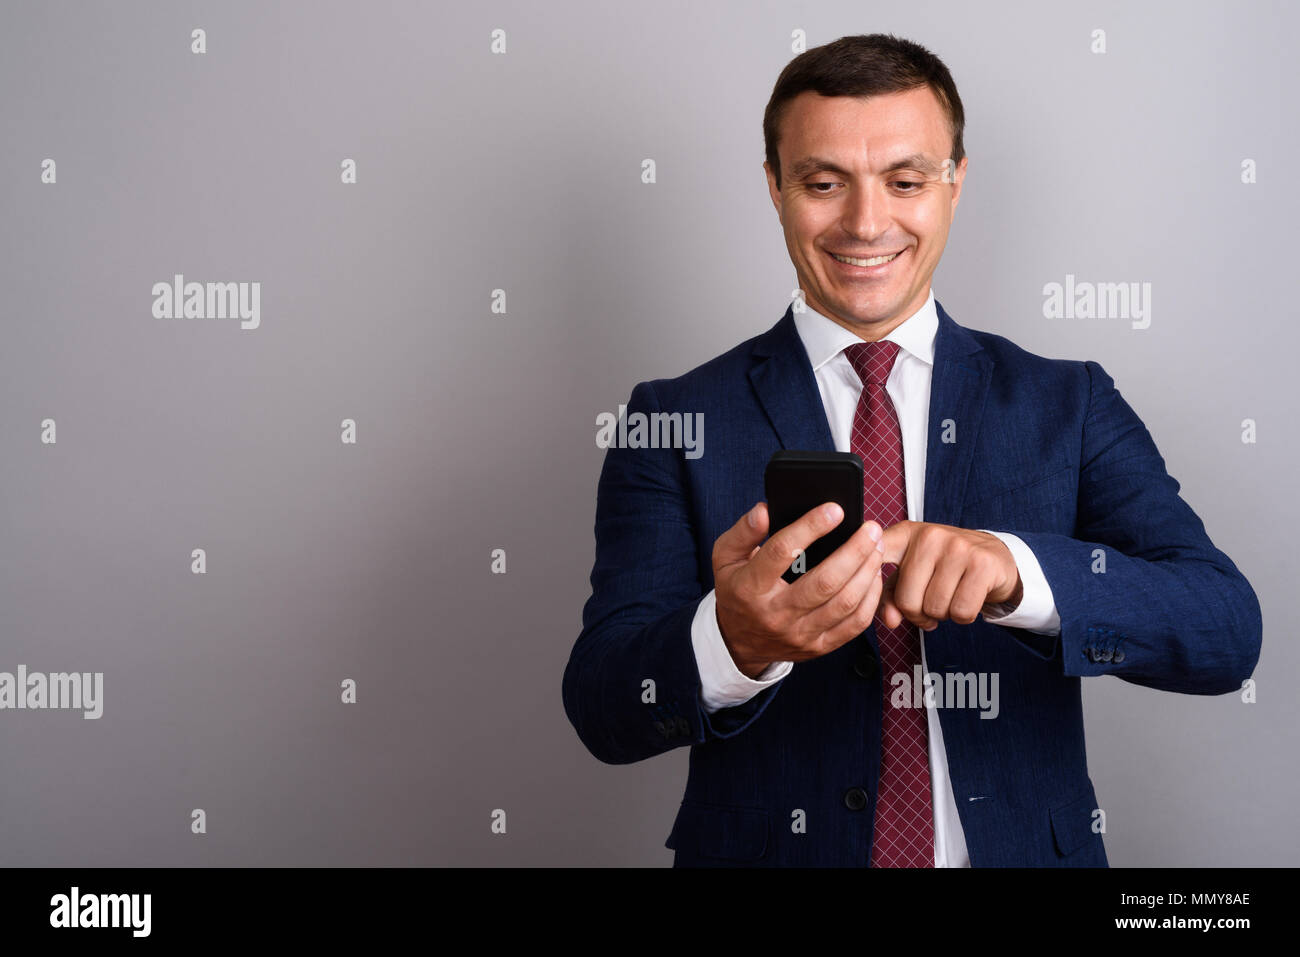 Businessman wearing suit lors de l'utilisation de téléphone mobile contre b gris Banque D'Images